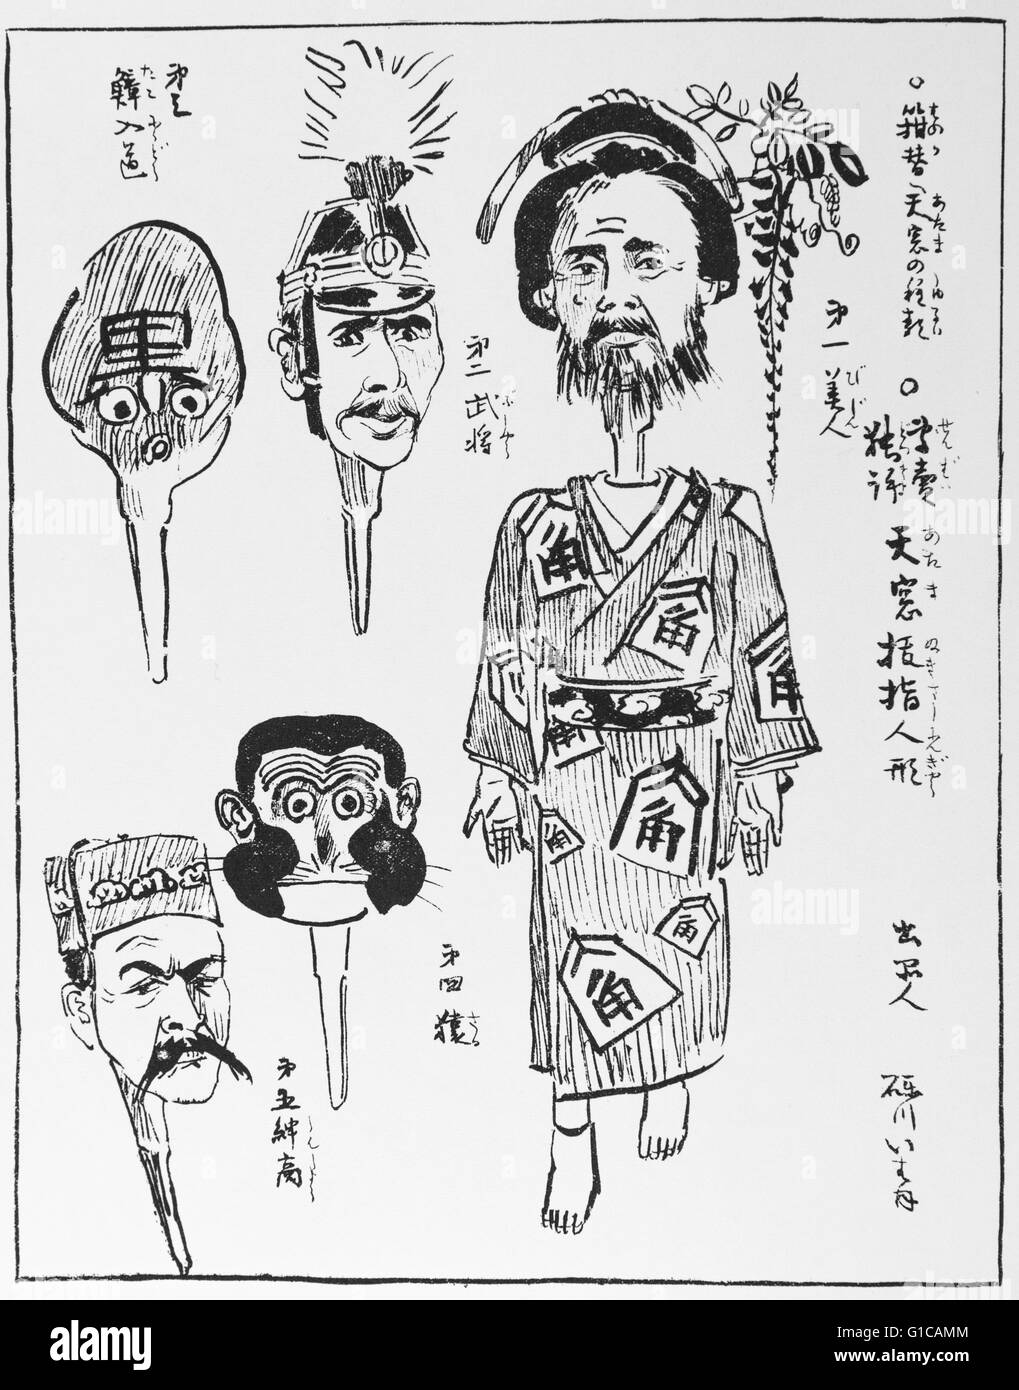 Testa di bambola mutevoli, pubblicato su Maru Maru Chimbun 6 luglio 1895 (No.1039). Anche se le modifiche di testa,non cambia sostanzialmente. Questa è una caricatura per cabinet e il primo ministro. La donna è Hirobumi Ito, soldato è Aritomo Yamagata, polpo è Kiyotaka Kuroda, scimmia è Kaoru Inoue, Merchant è Masayoshi Matsukata. Artista Beisaku Taguchi ( 1864 - 1903). Foto Stock